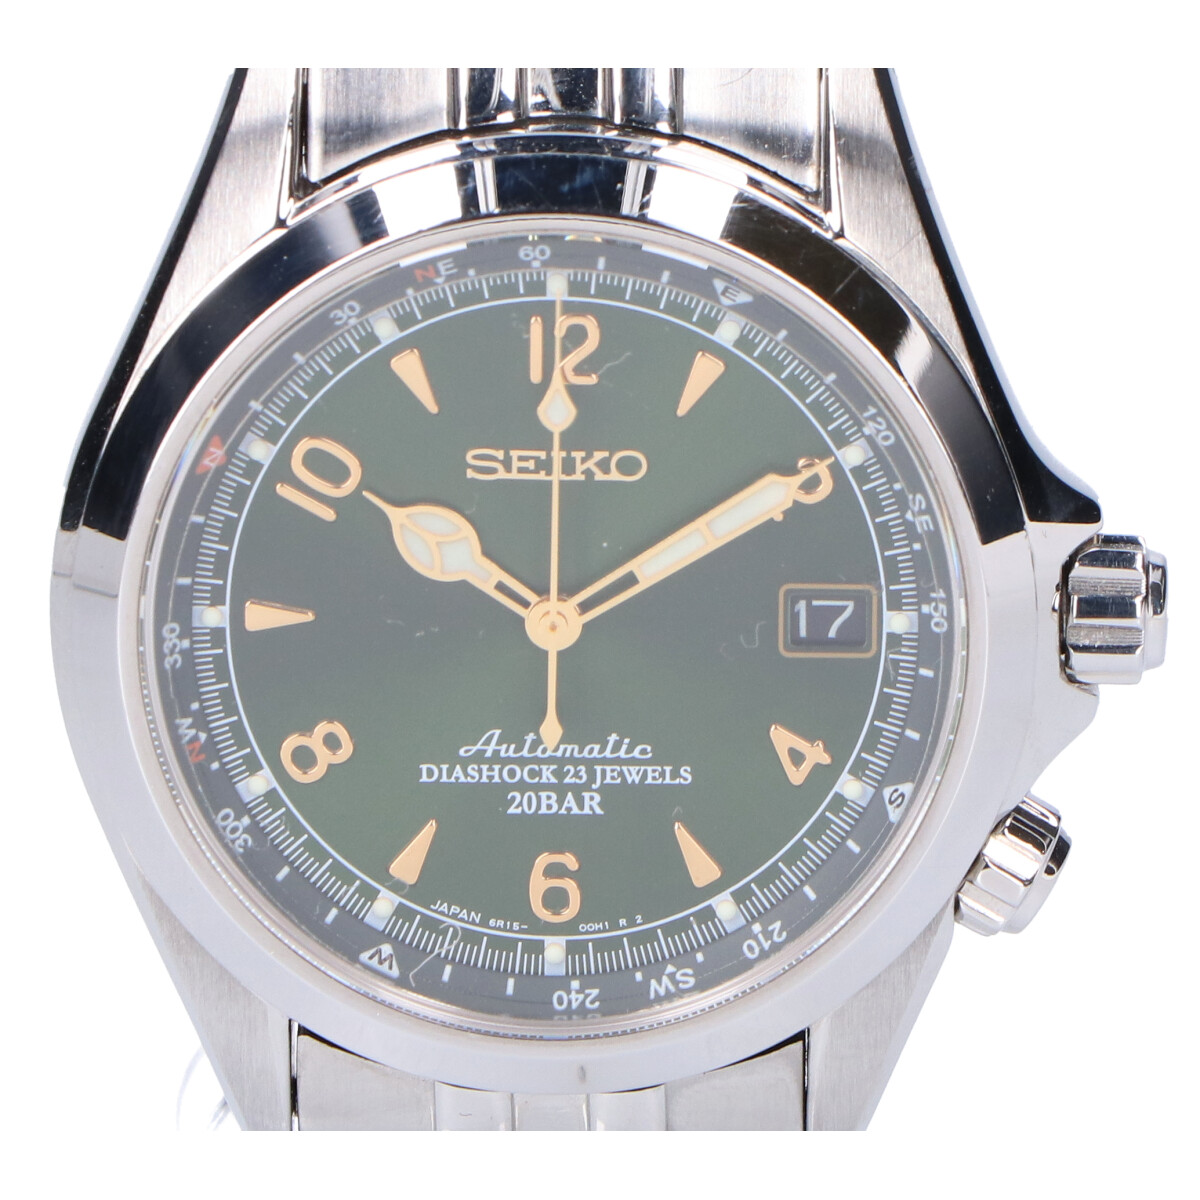 セイコーのSARB017 メカニカル アルピニスト 自動巻き時計の買取実績です。